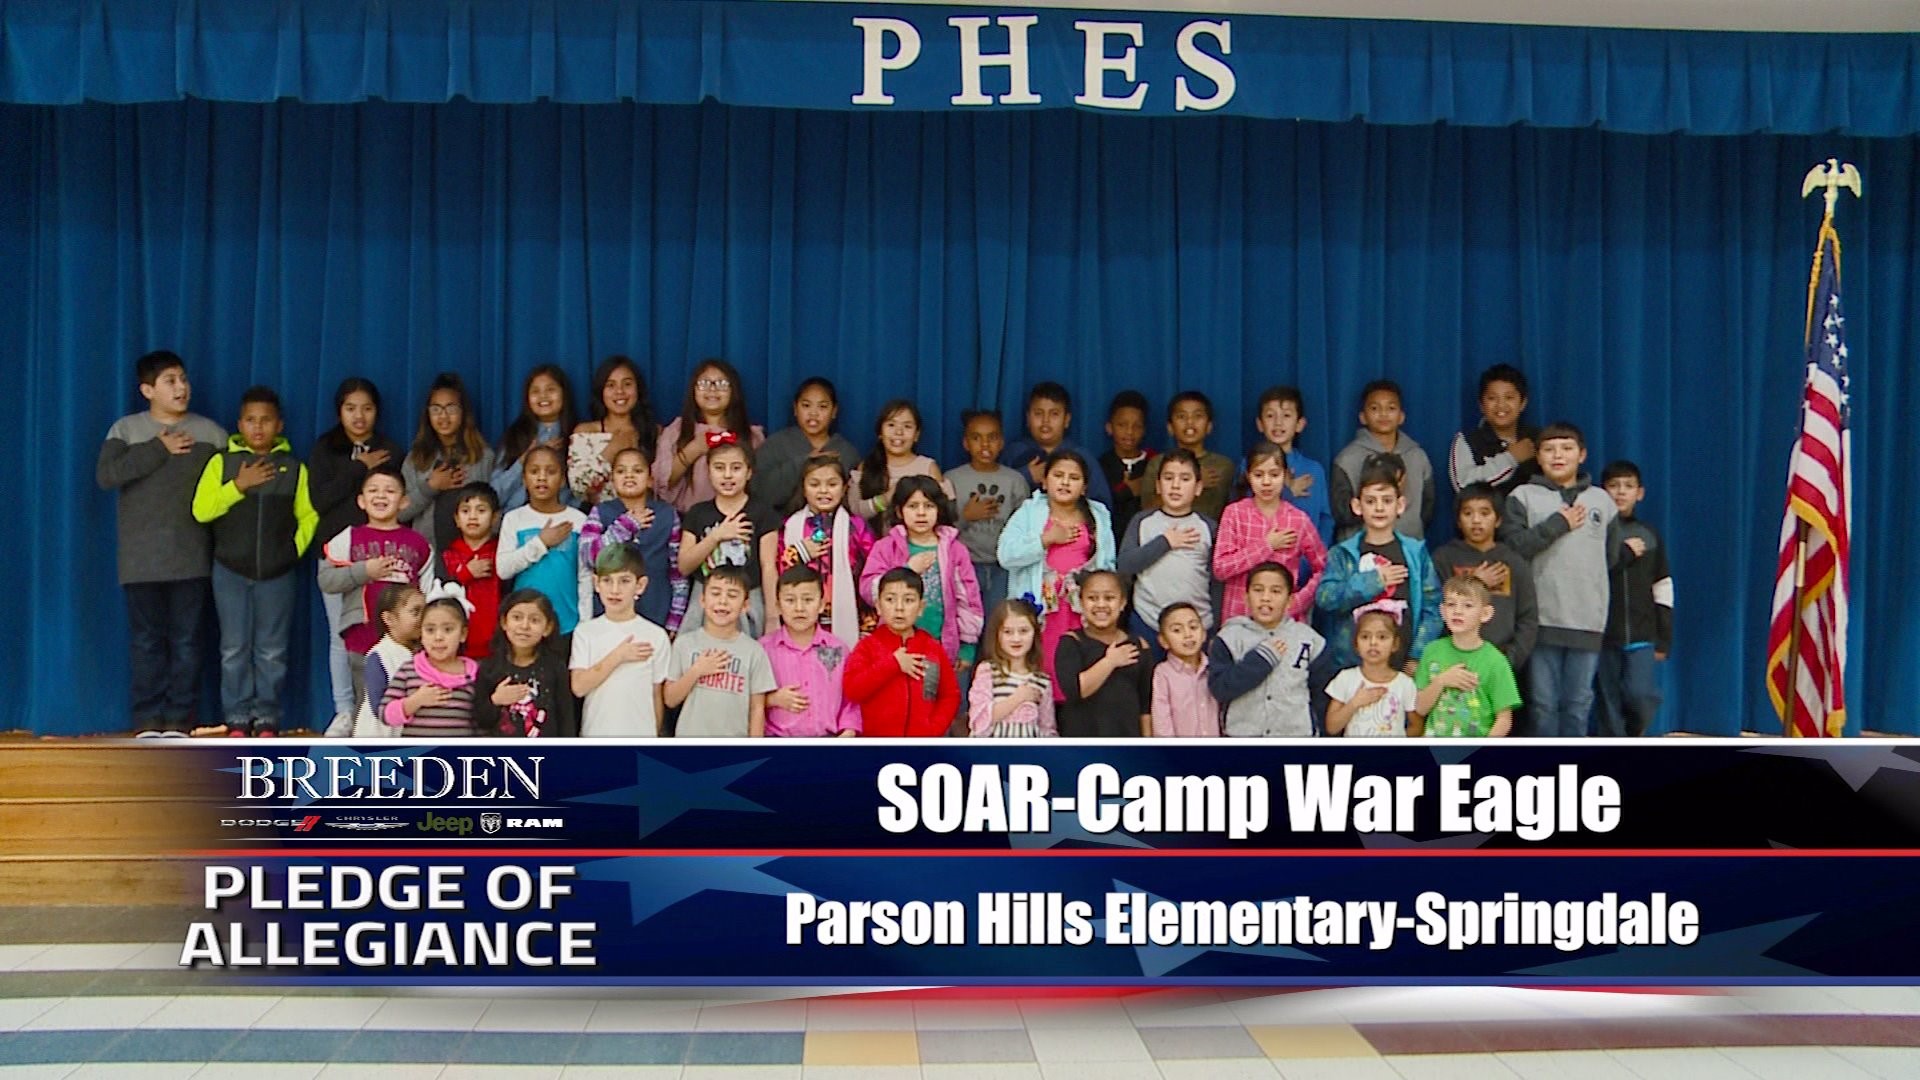 Soar  Camp War Eagle  Parson Hills Elementary, Springdale